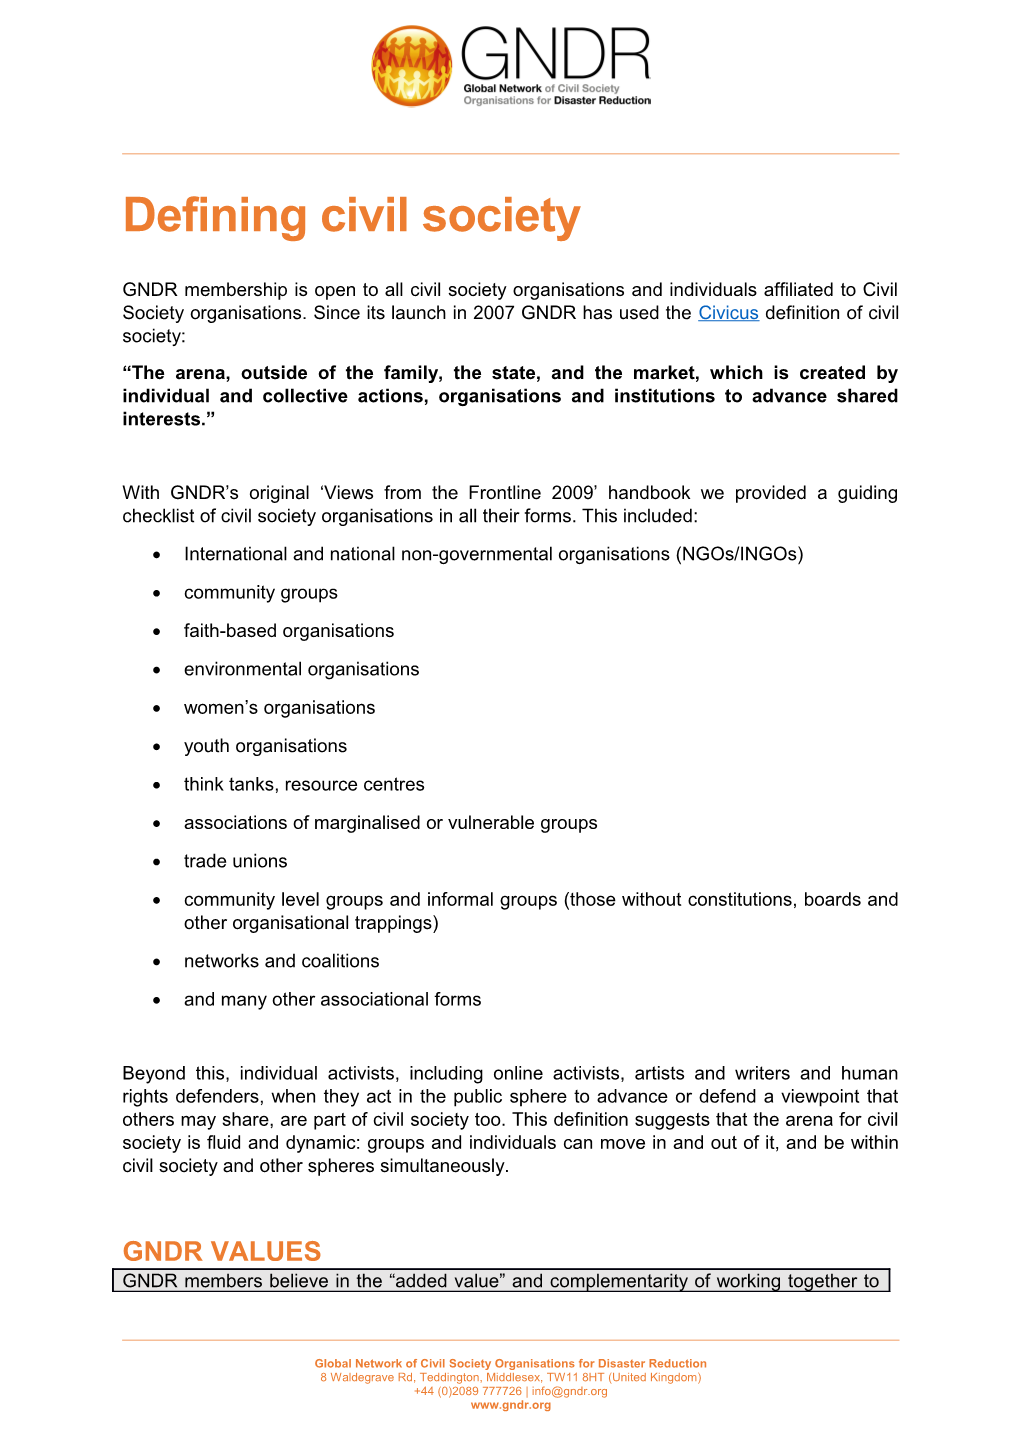 Defining Civil Society